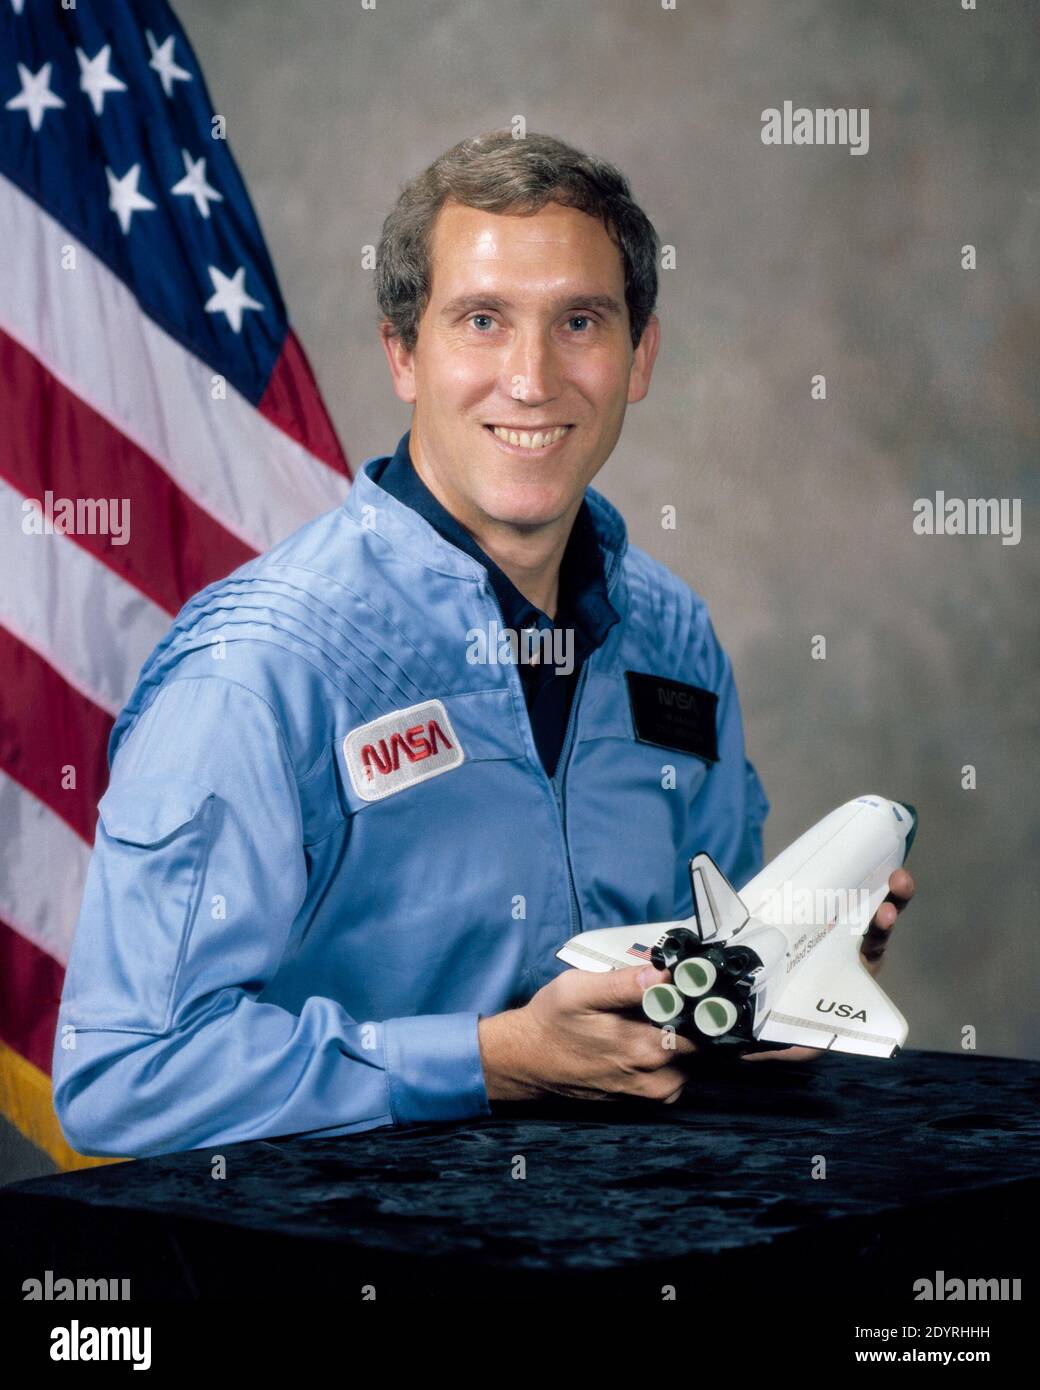 Michael John Smith (30 avril 1945 – 28 janvier 1986), (Capt, USN), ingénieur et astronaute américain. Il a été pilote de la navette spatiale Challenger lorsqu'elle a été détruite pendant la mission STS-51-L, lorsqu'elle a éclaté pendant 73 secondes et à une altitude de 48,000 pieds (14.6 km), tuant les 7 membres d'équipage. La voix de Smith était la dernière voix entendue sur l'enregistreur vocal Challenger. Il a été un maître de sciences qui a occupé un diplôme en génie aéronautique. Banque D'Images